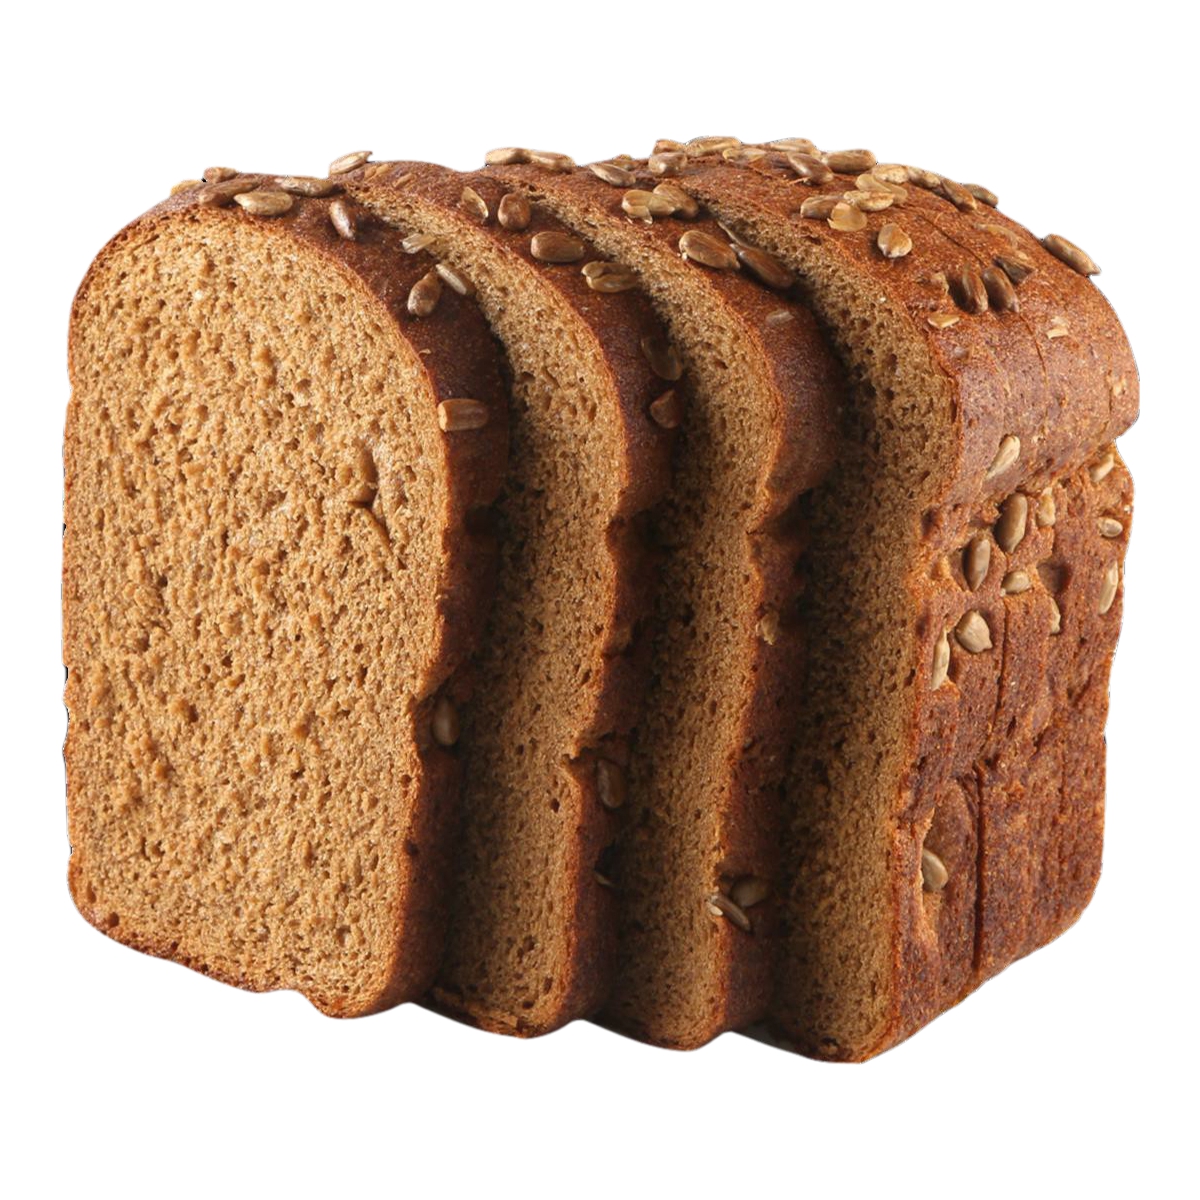 Хлеб Лента Солодовый заварной в нарезке ржано-пшеничный 400 г